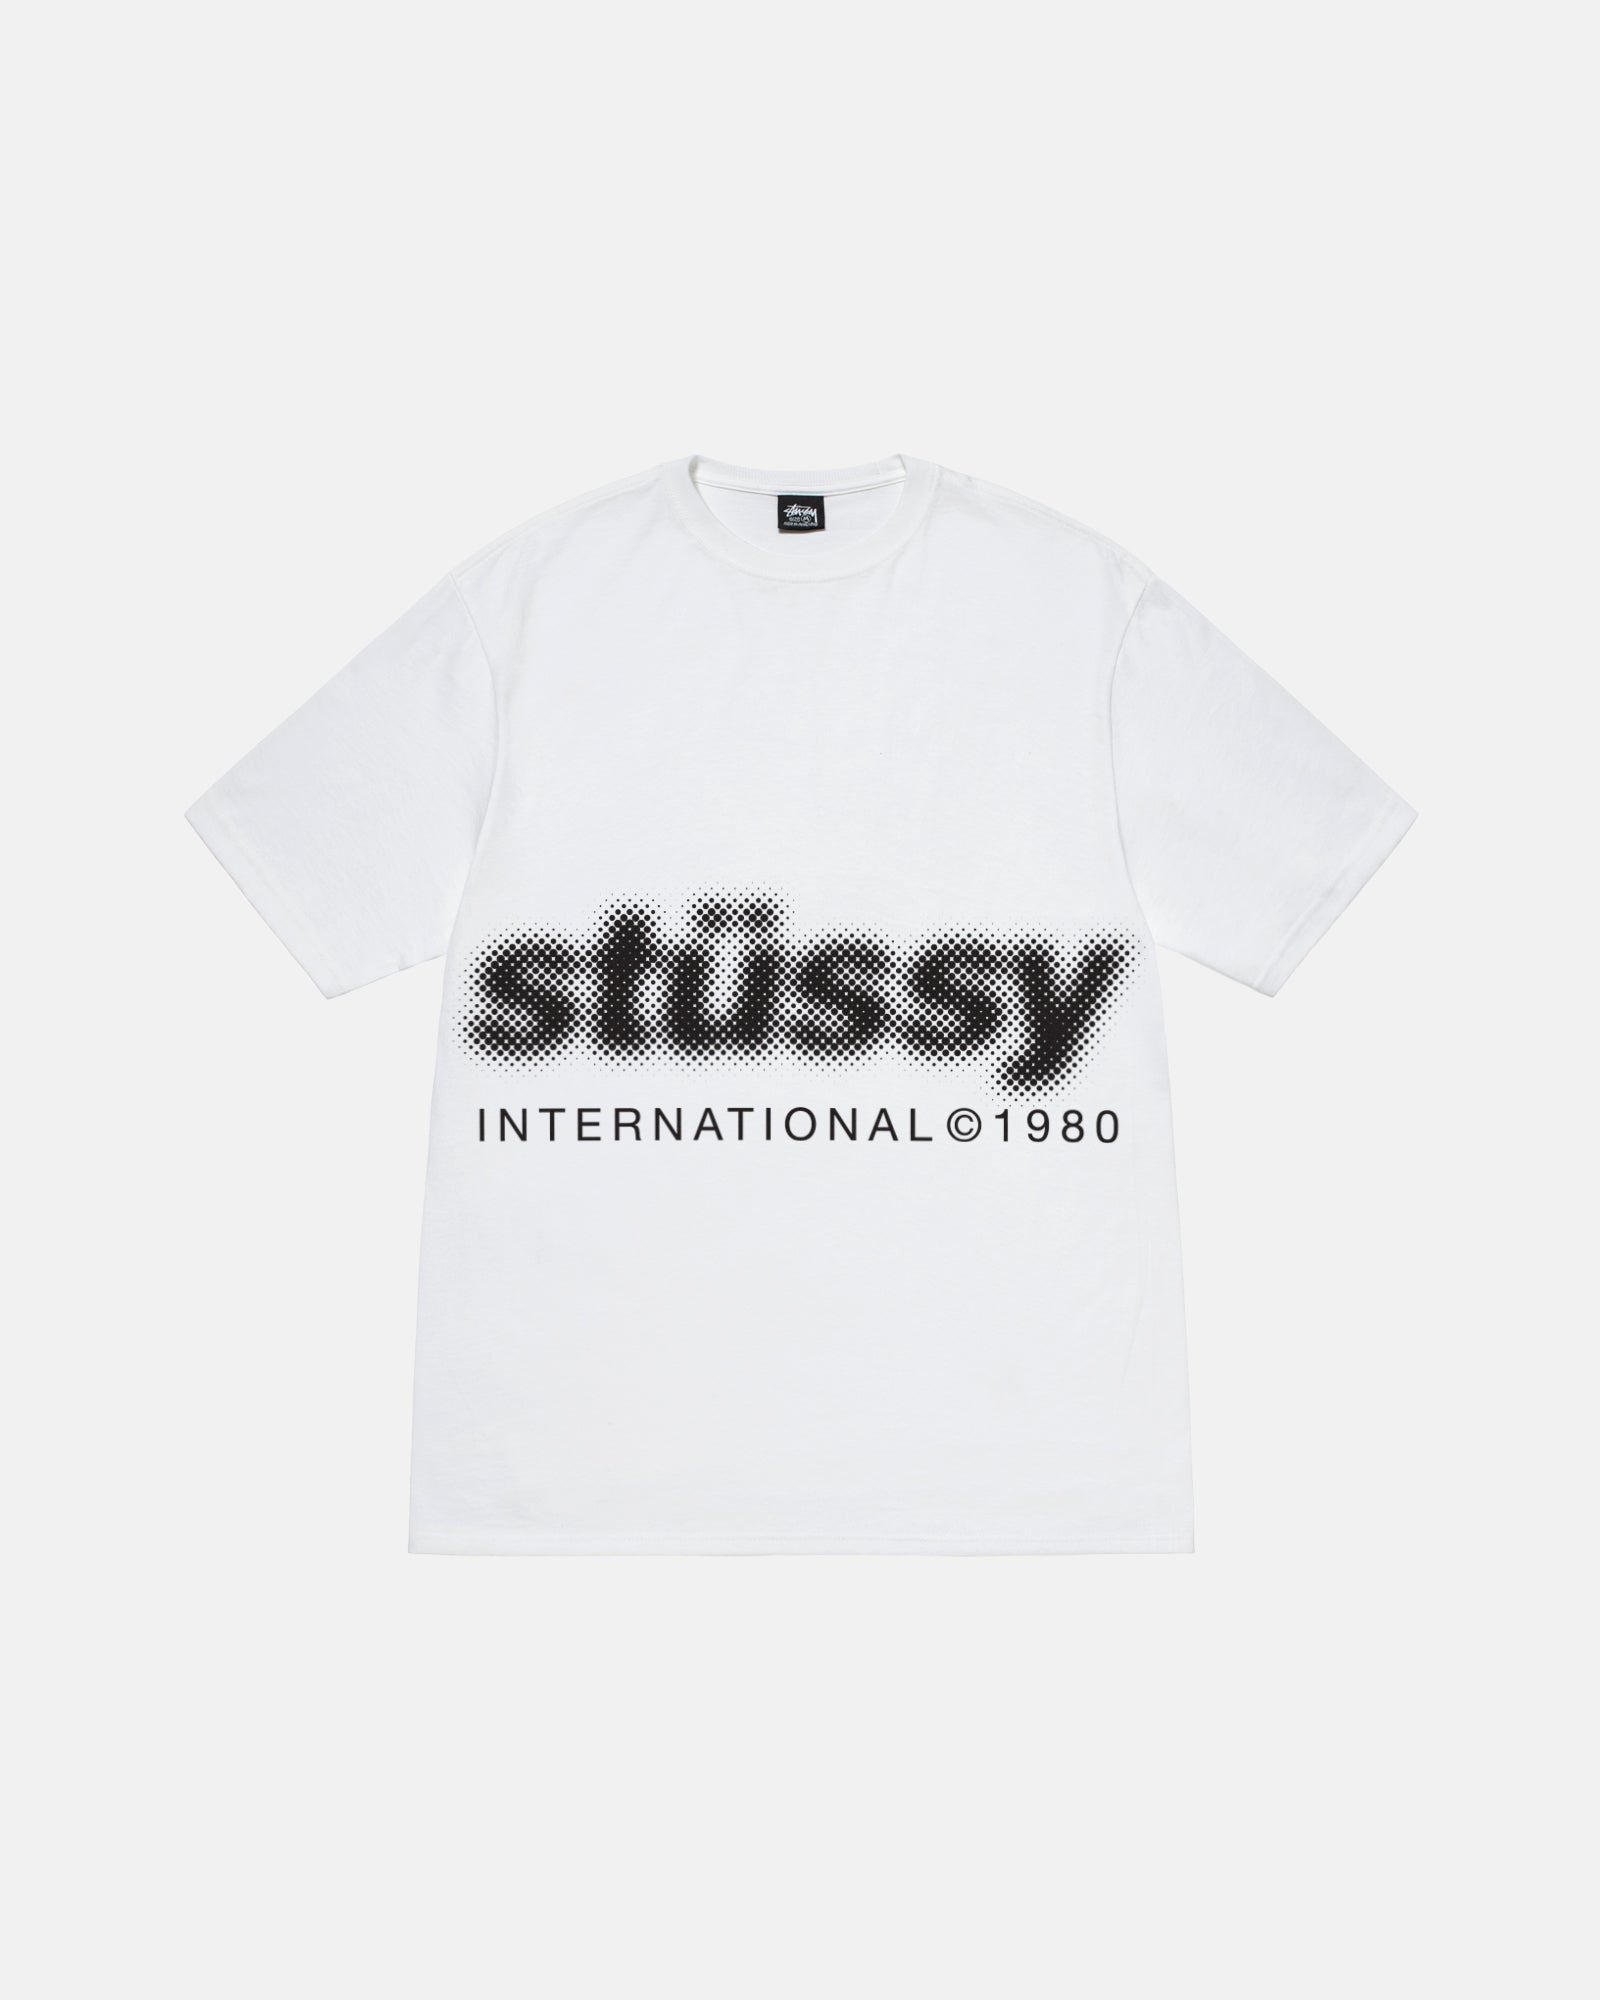 XL – Stüssy Japan